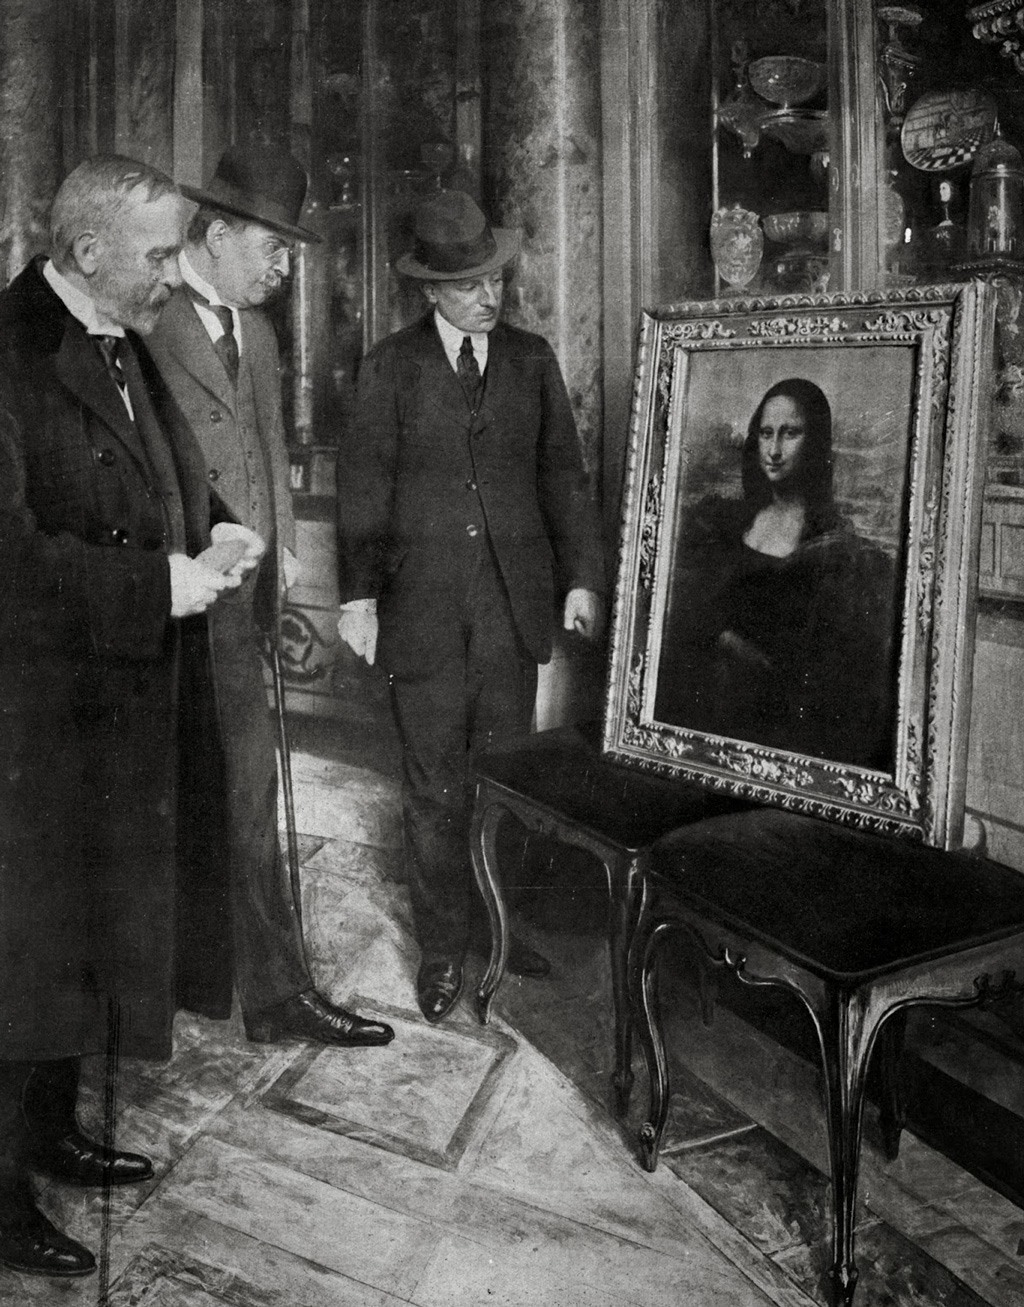 (جيوفاني بودجي) مدير صالة عرض (أوفيتزي) [على اليمين] يتفقد لوحة الموناليزا خلال إقامتها الوجيزة هناك في فلورنسا بإيطاليا في ديسمبر من سنة 1913